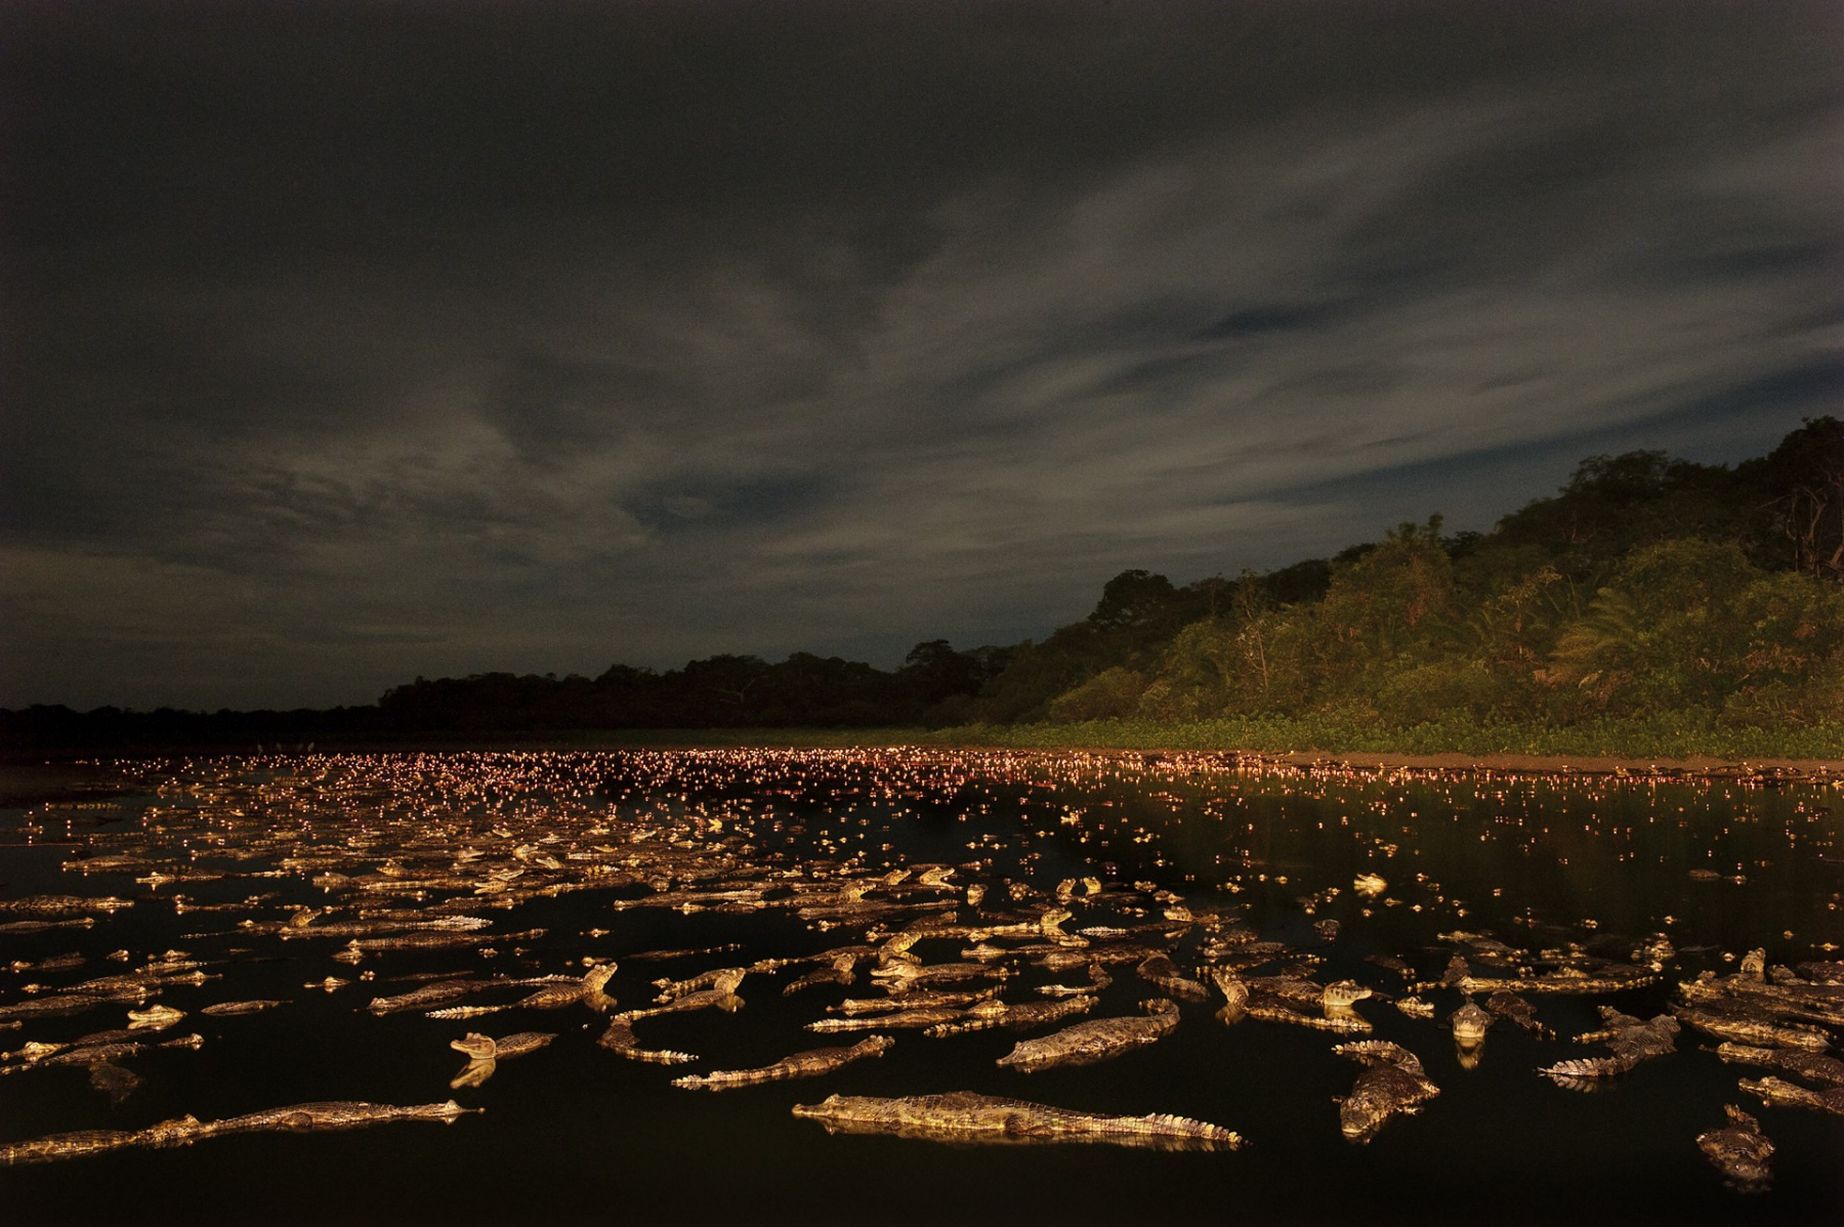 Στο τέλος της ξηρής περιόδου στο Pantalan, αλιγάτορες μαζεύονται στις λίμνες για να καταβροχθίσουν ψάρια